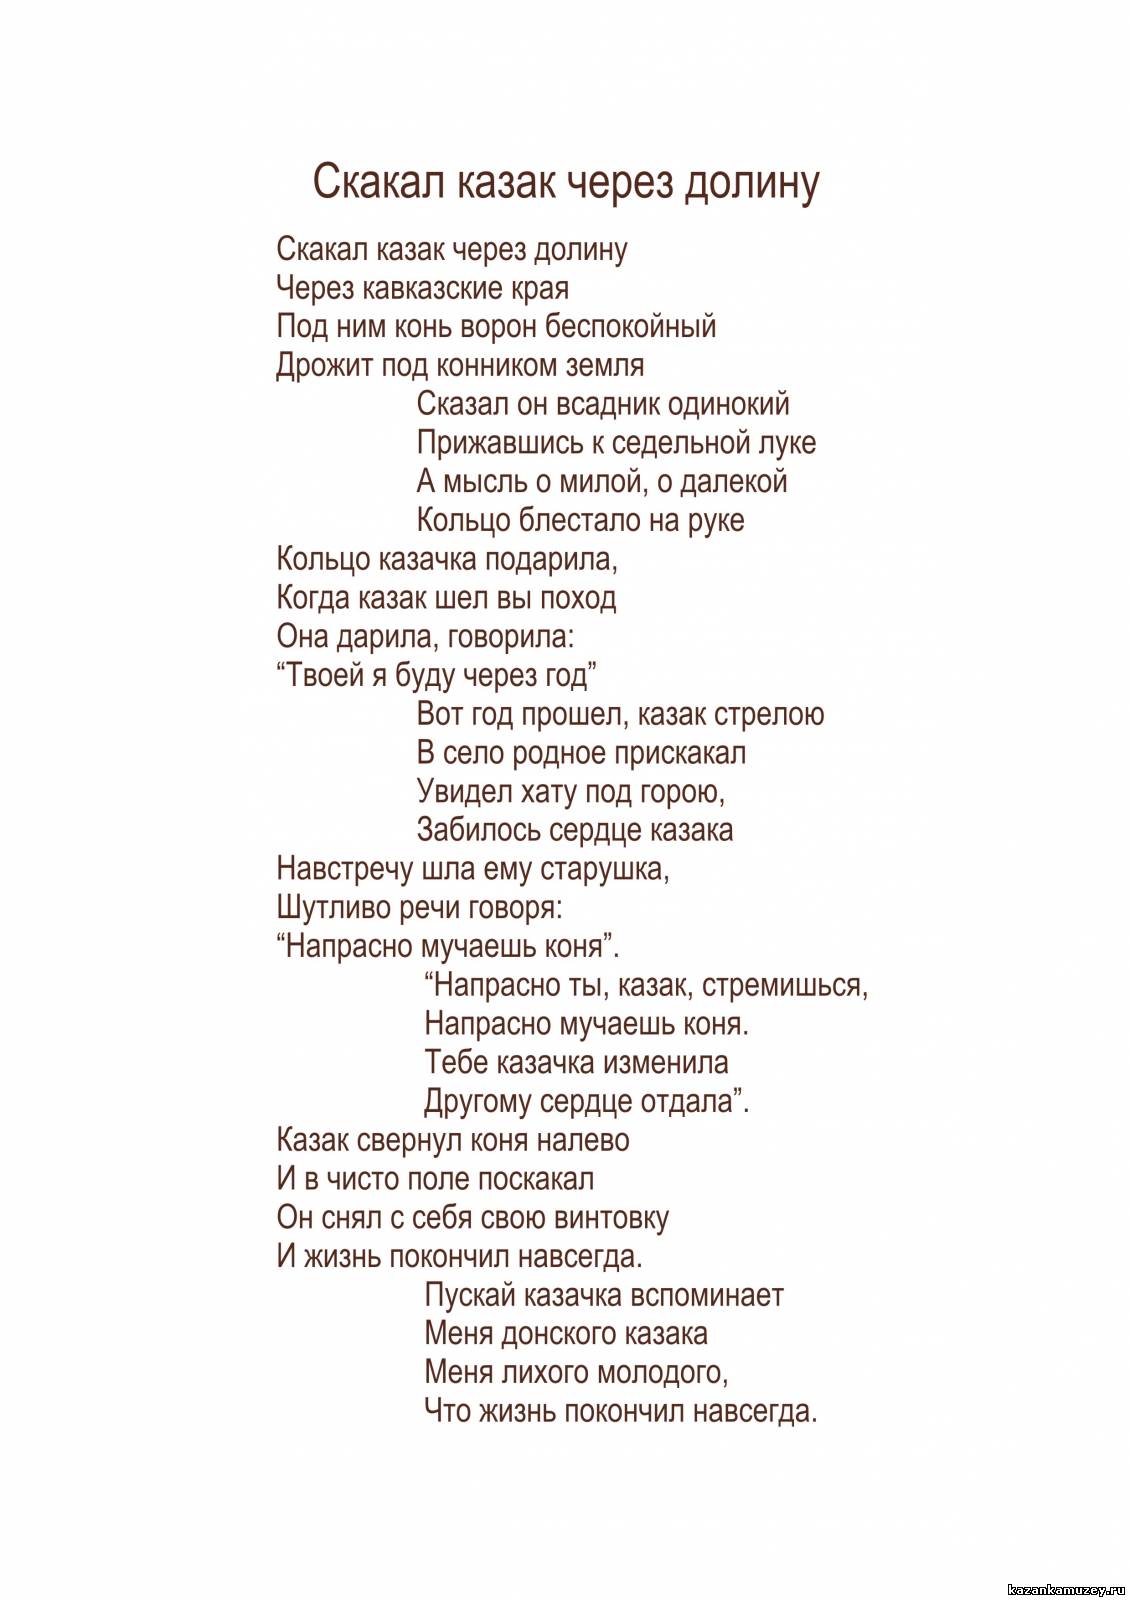 Текст песни казаки